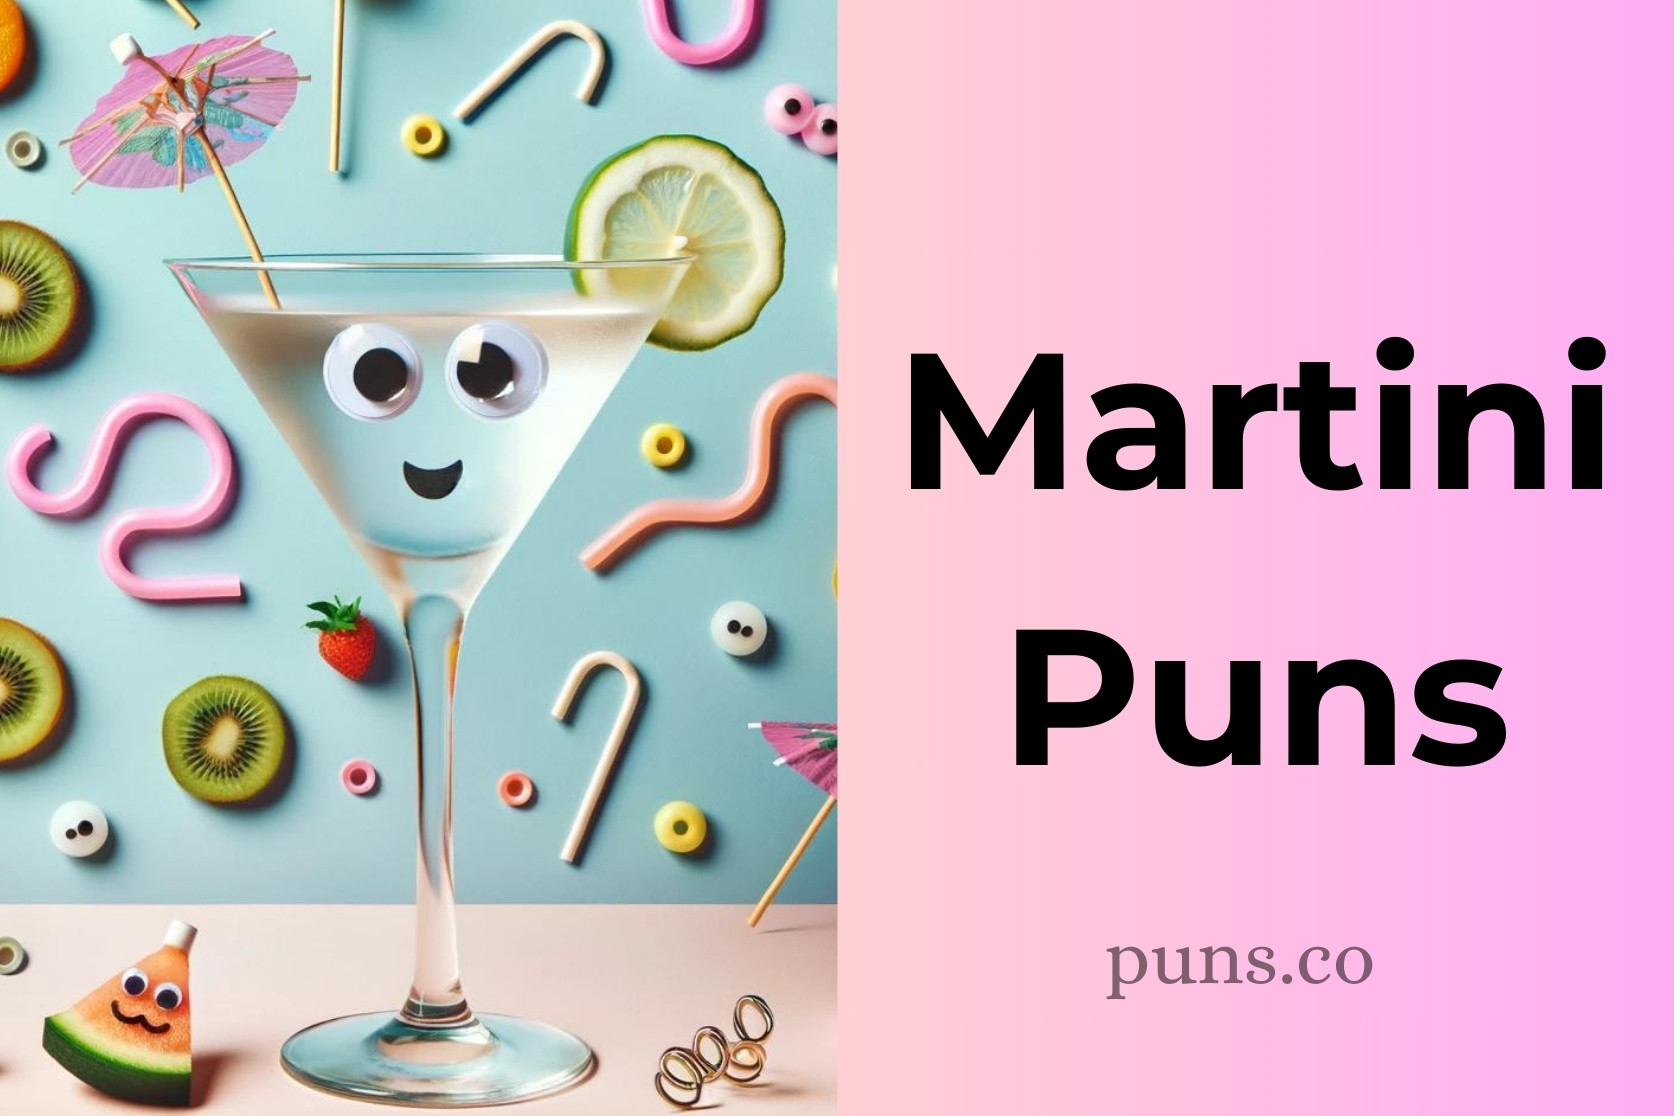 Martini Puns